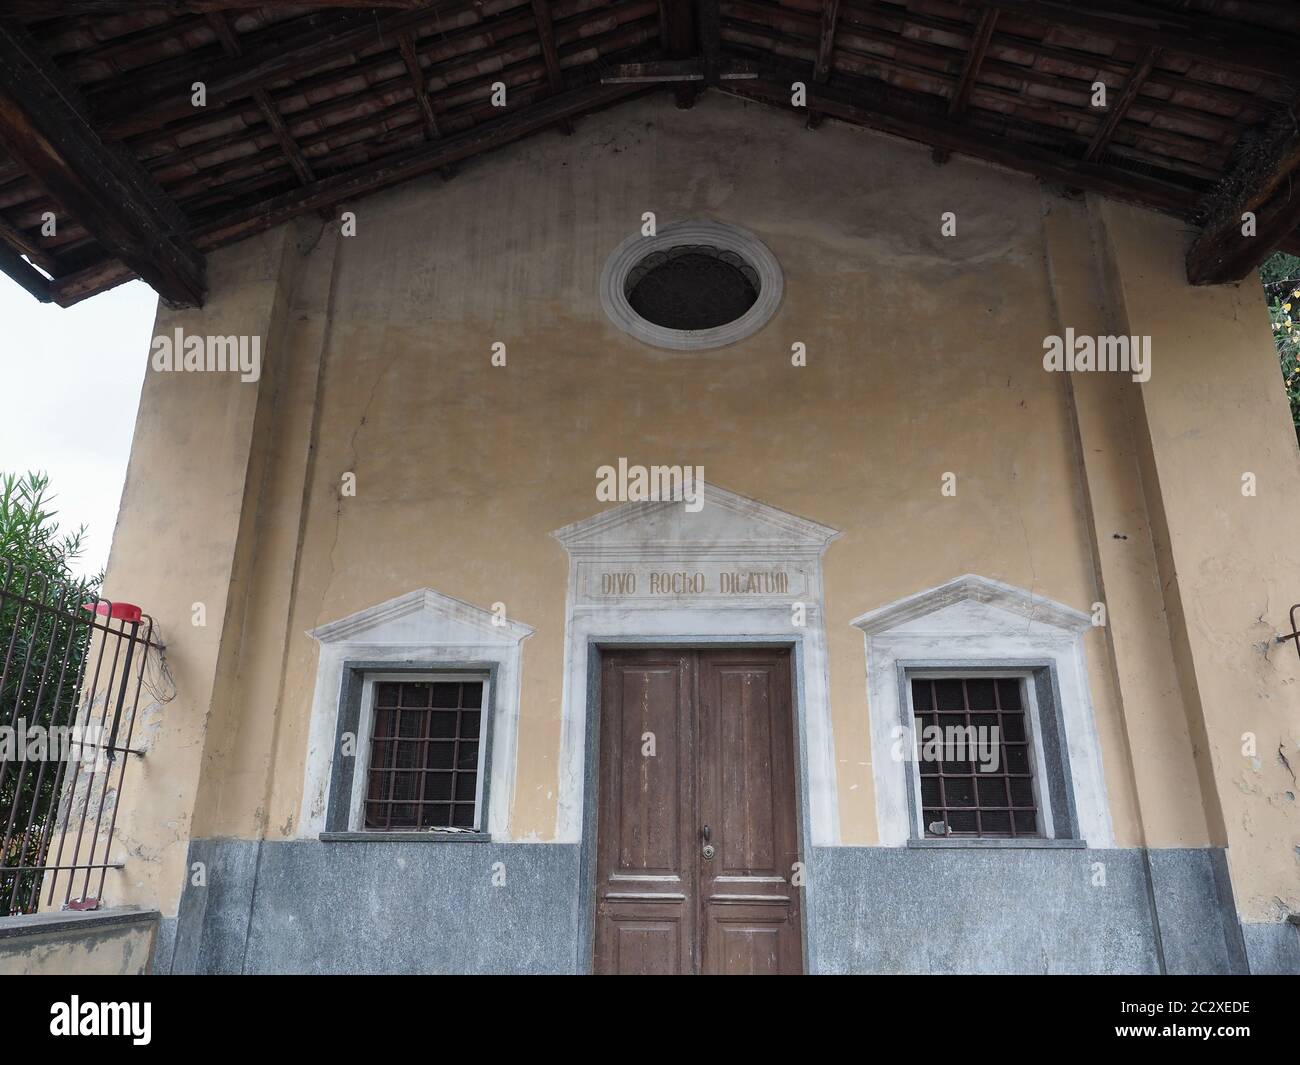 San Rocco (che significa San Rocco) cappella a Settimo Torinese, Italia. Divo rocho dicatum significa Dedicato a San Rocco. Foto Stock